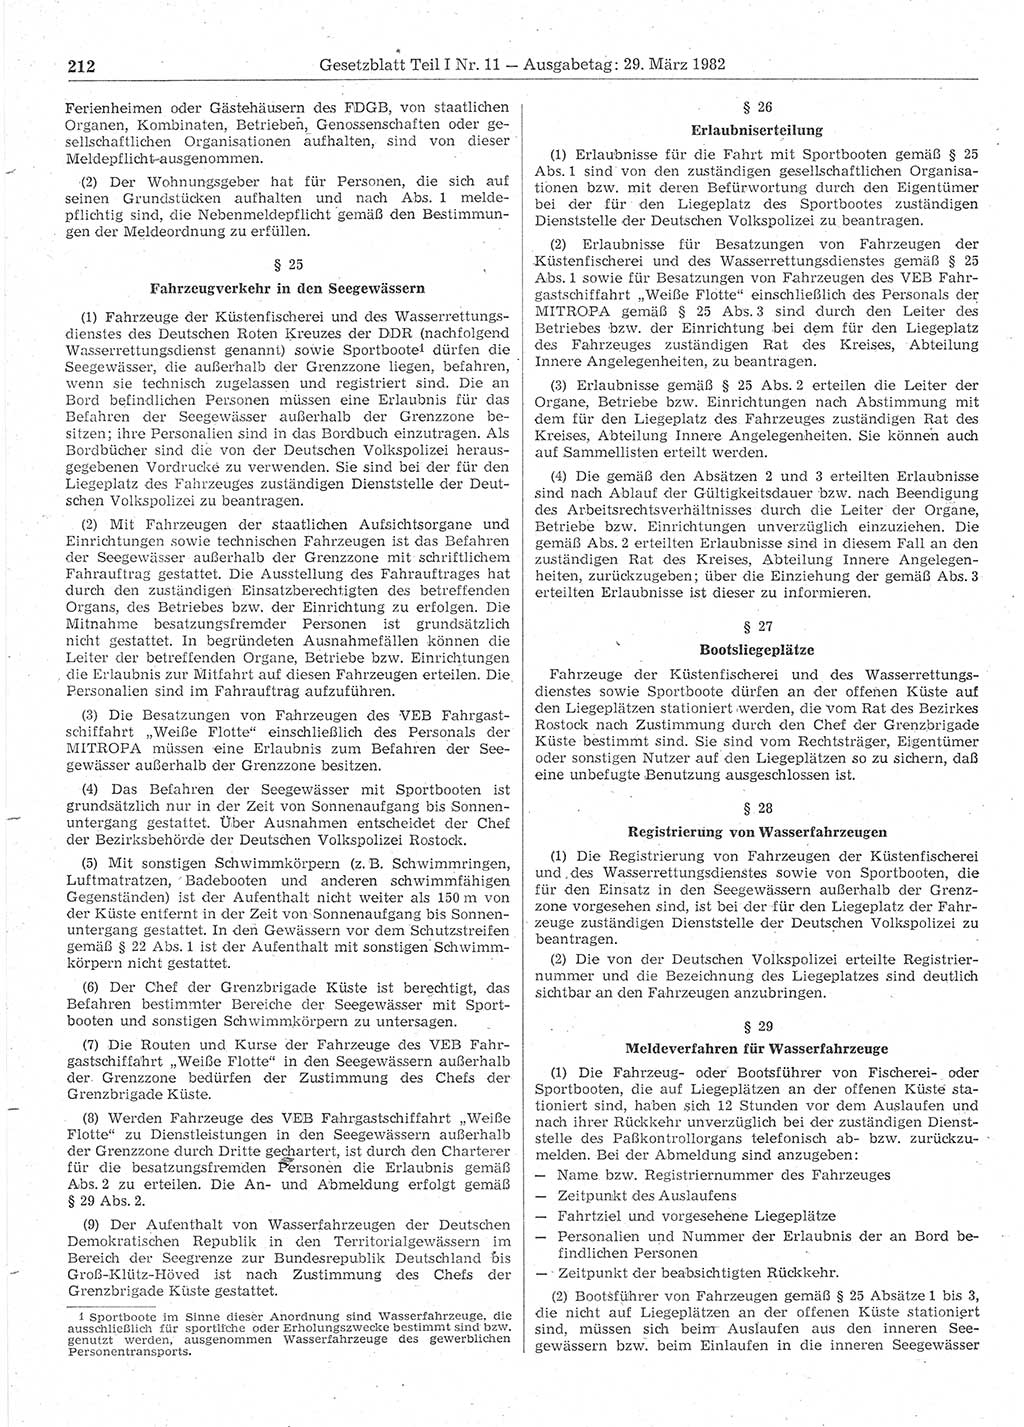 Gesetzblatt (GBl.) der Deutschen Demokratischen Republik (DDR) Teil Ⅰ 1982, Seite 212 (GBl. DDR Ⅰ 1982, S. 212)